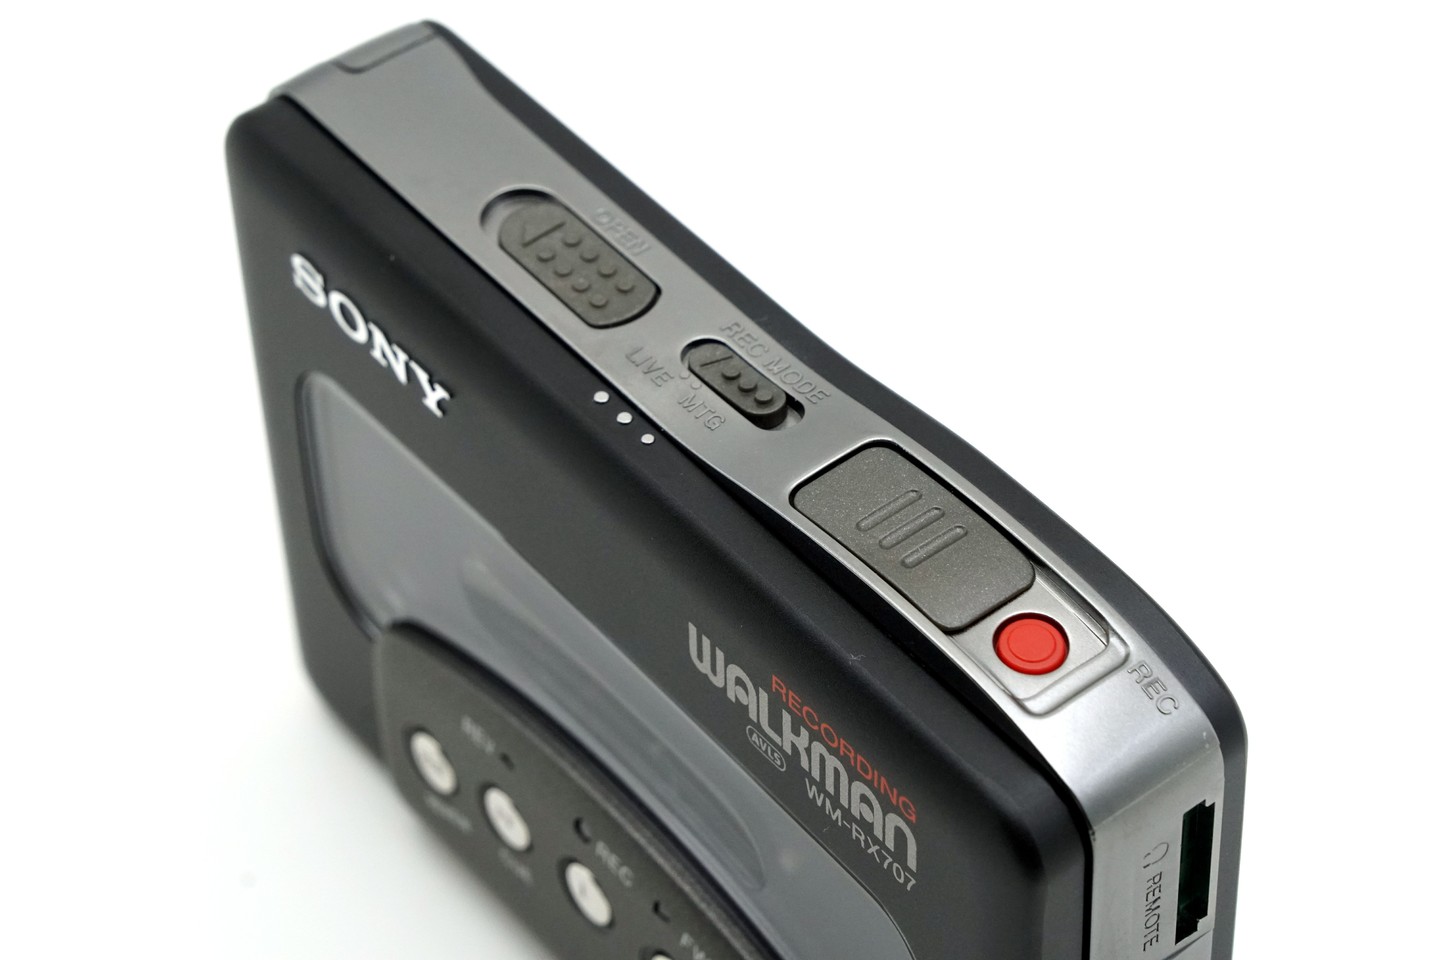 Sony WM-RX707 ▷ Walkman.land